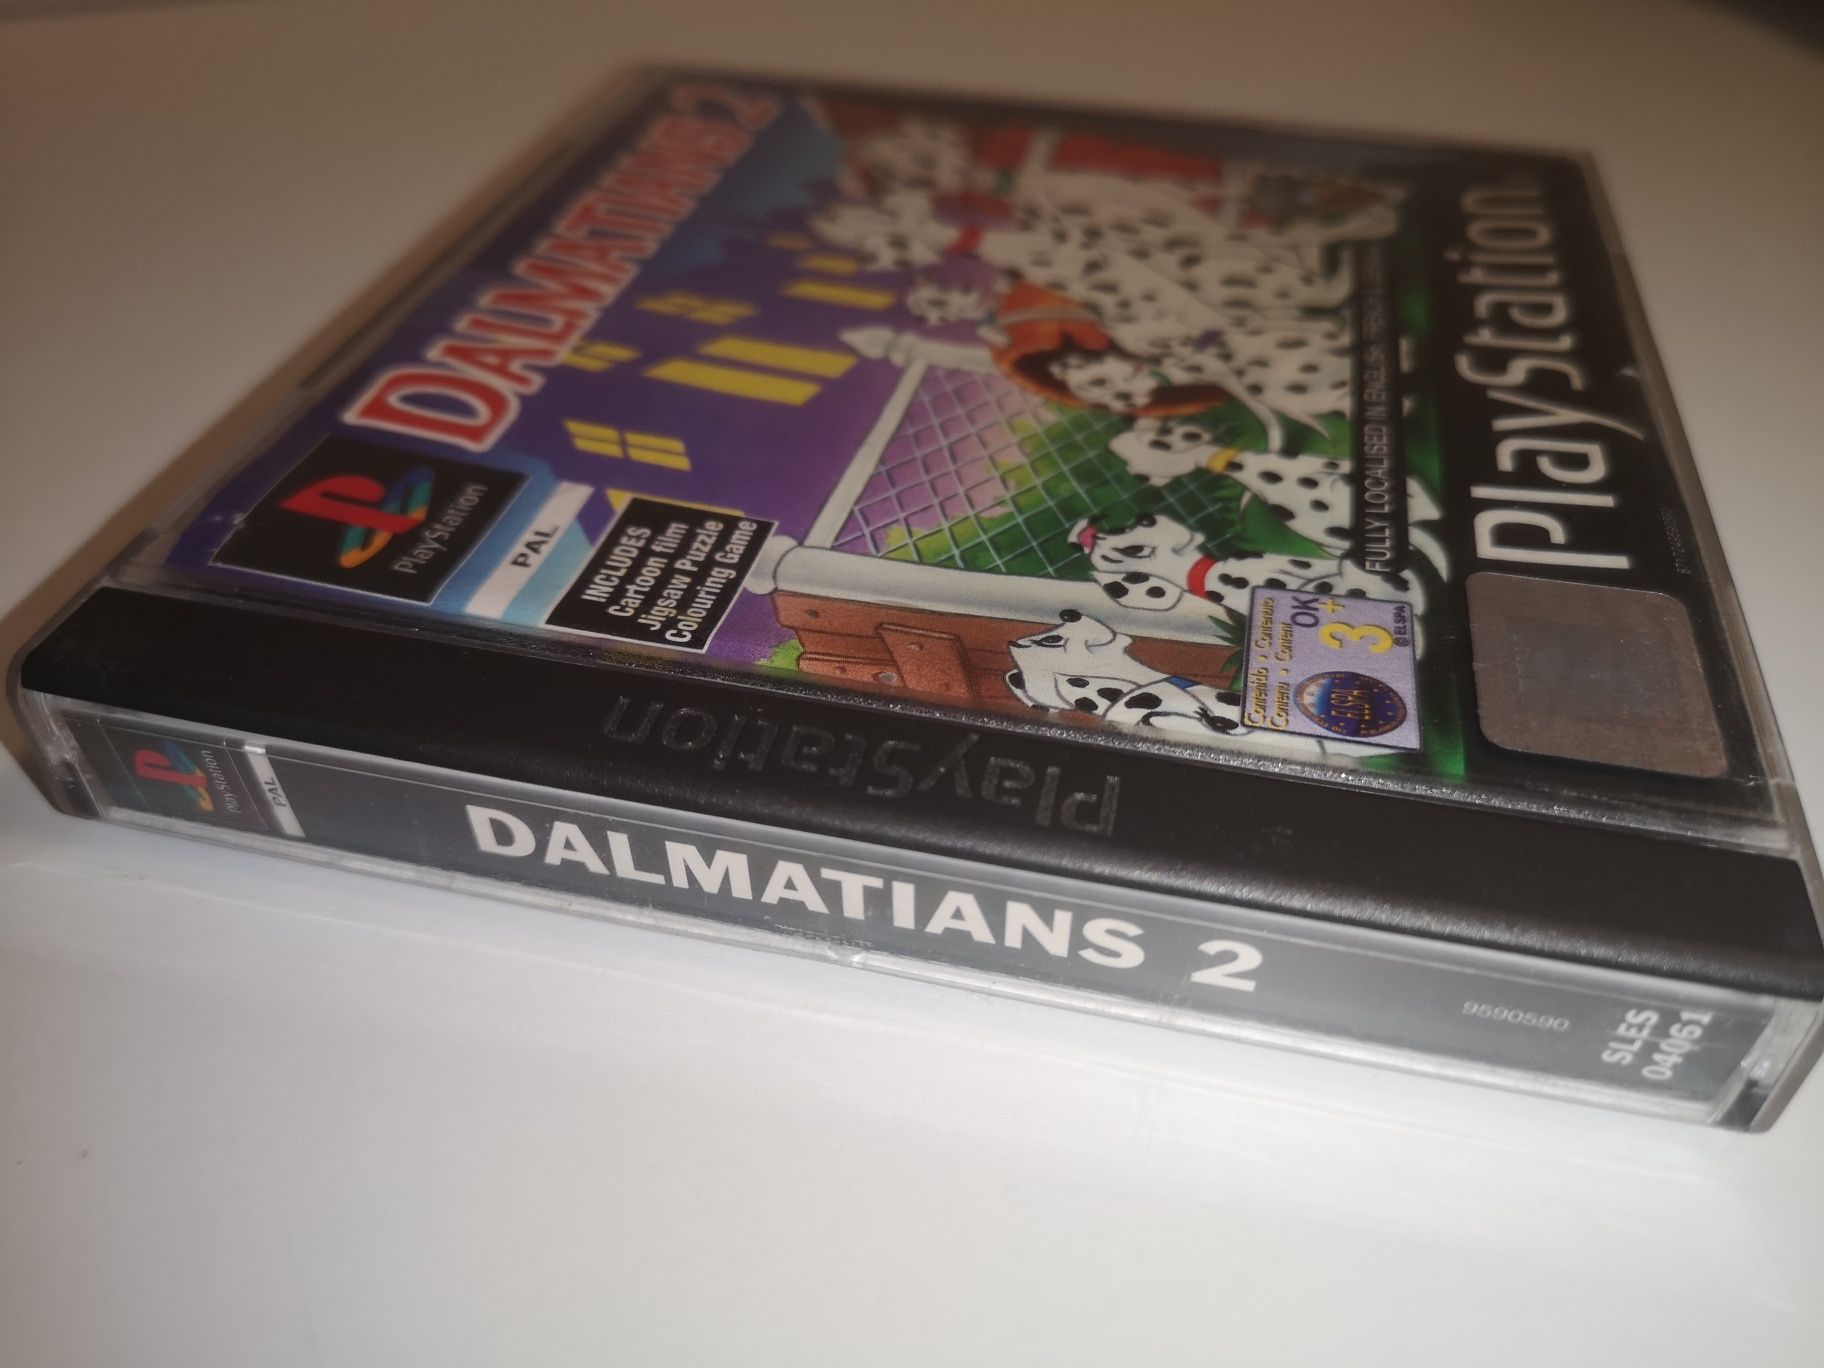 Dalmatians 2 PSX PS1 Retro gra (możliwość wymiany) kioskzgrami